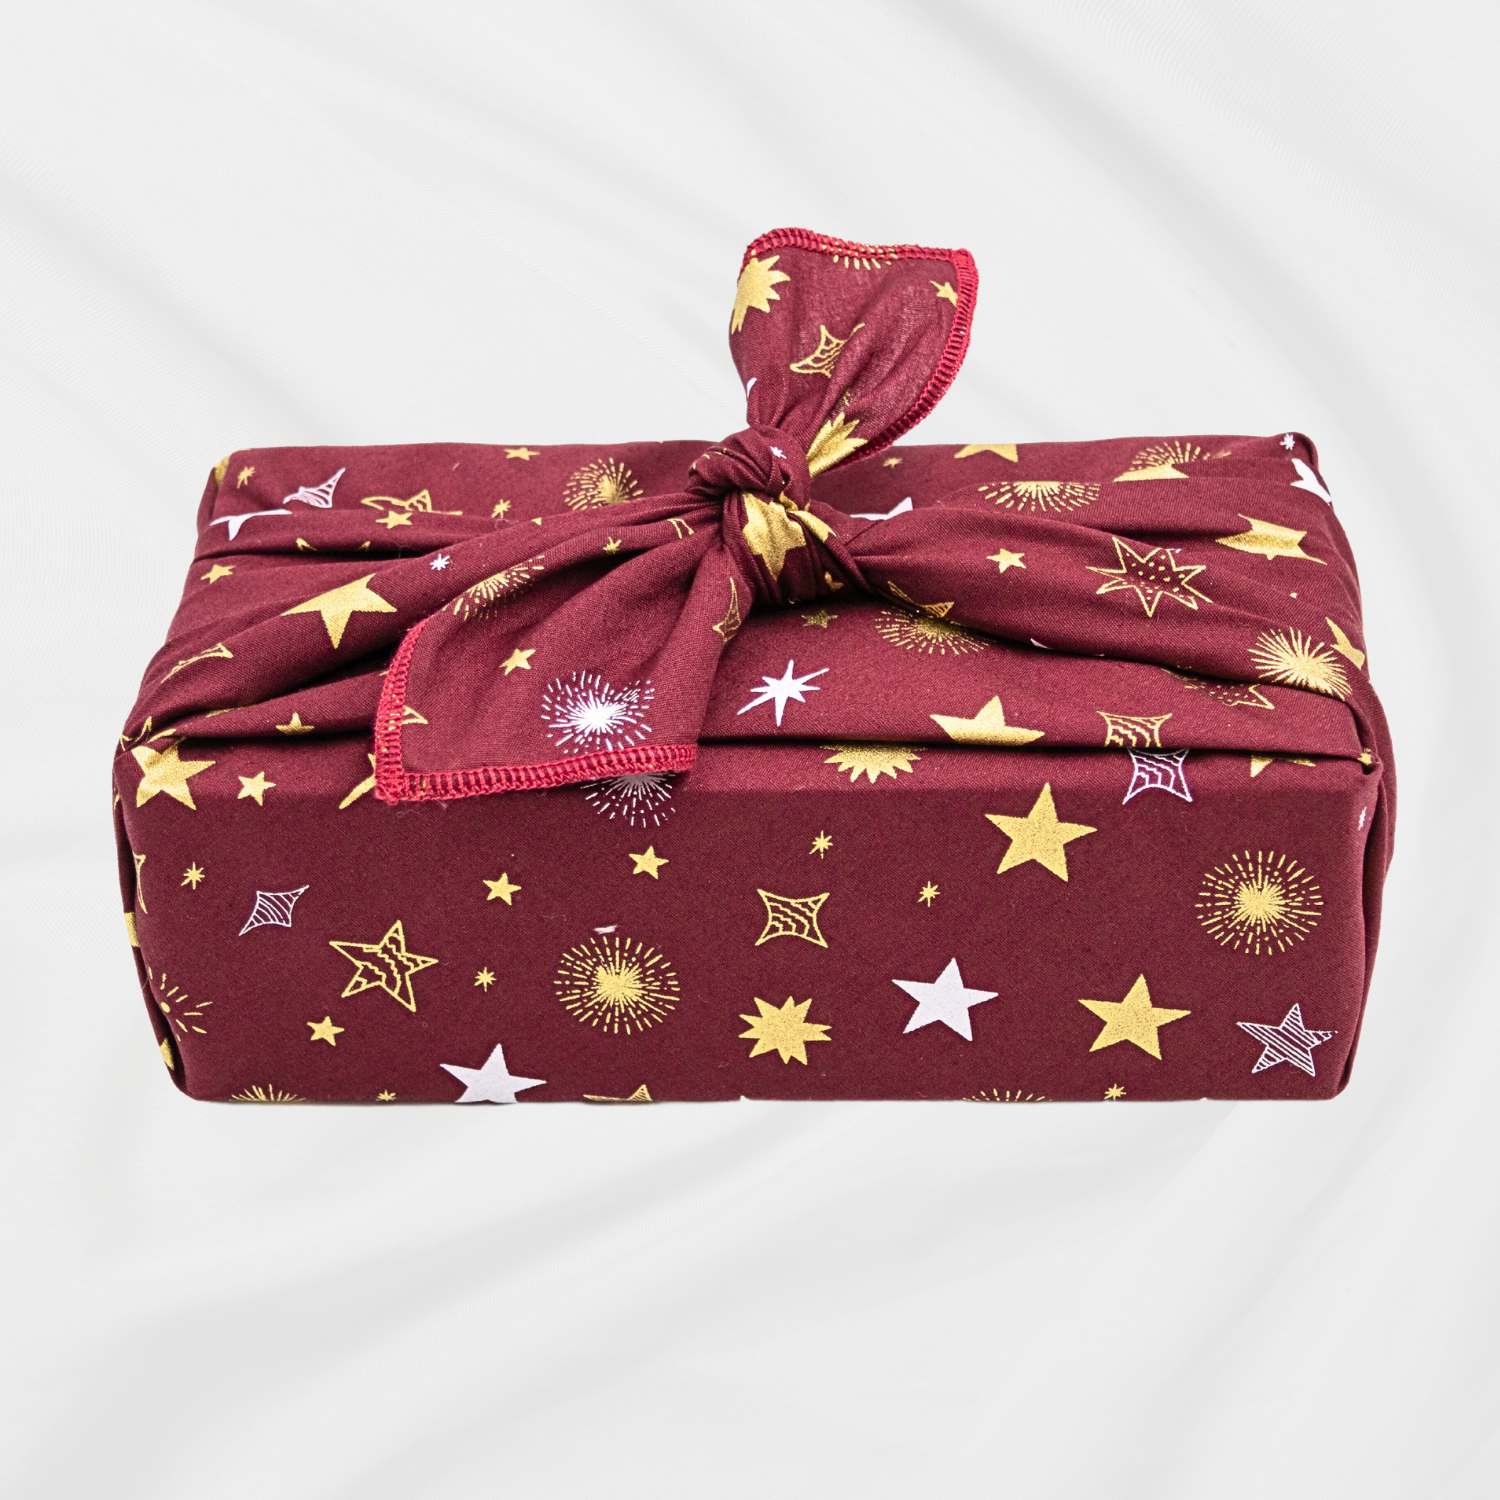 Papier d'emballage de Noël / sac de rangement pour emballage cadeau -  Nettoyer /